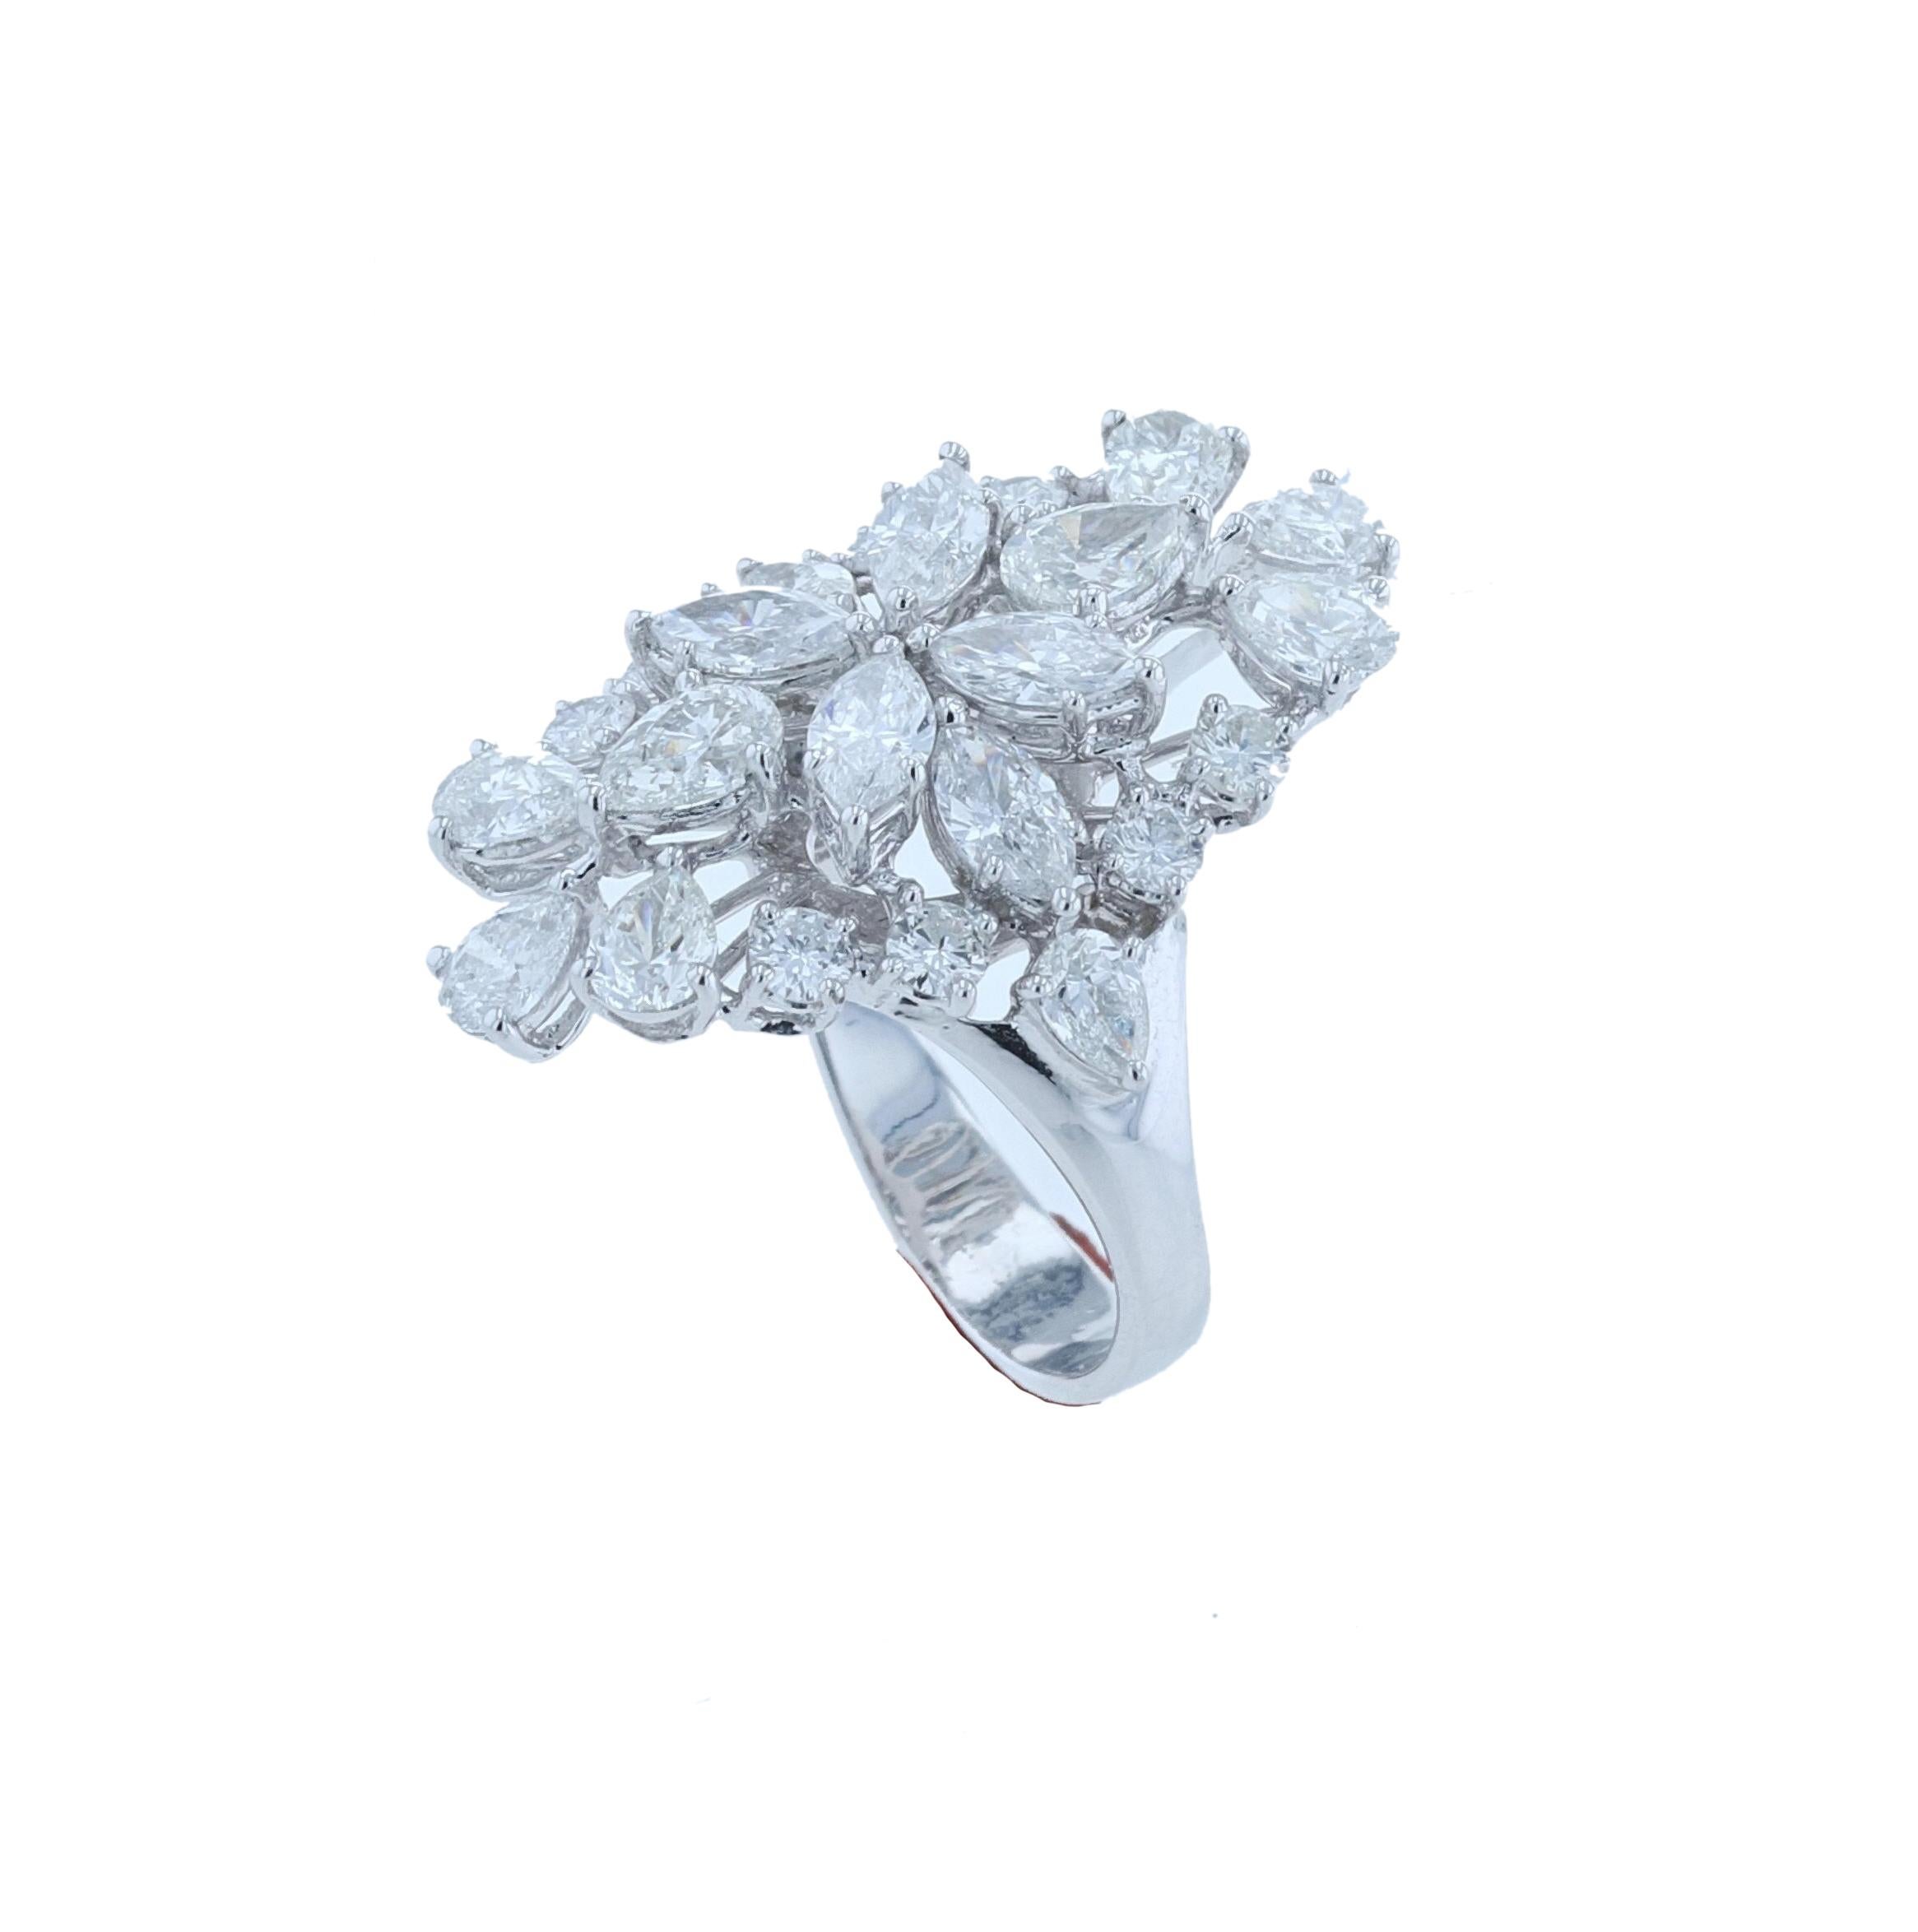 Women's Amwaj Jewelry Pear Shape Diamond Ring in 18 Karat White Gold For Sale